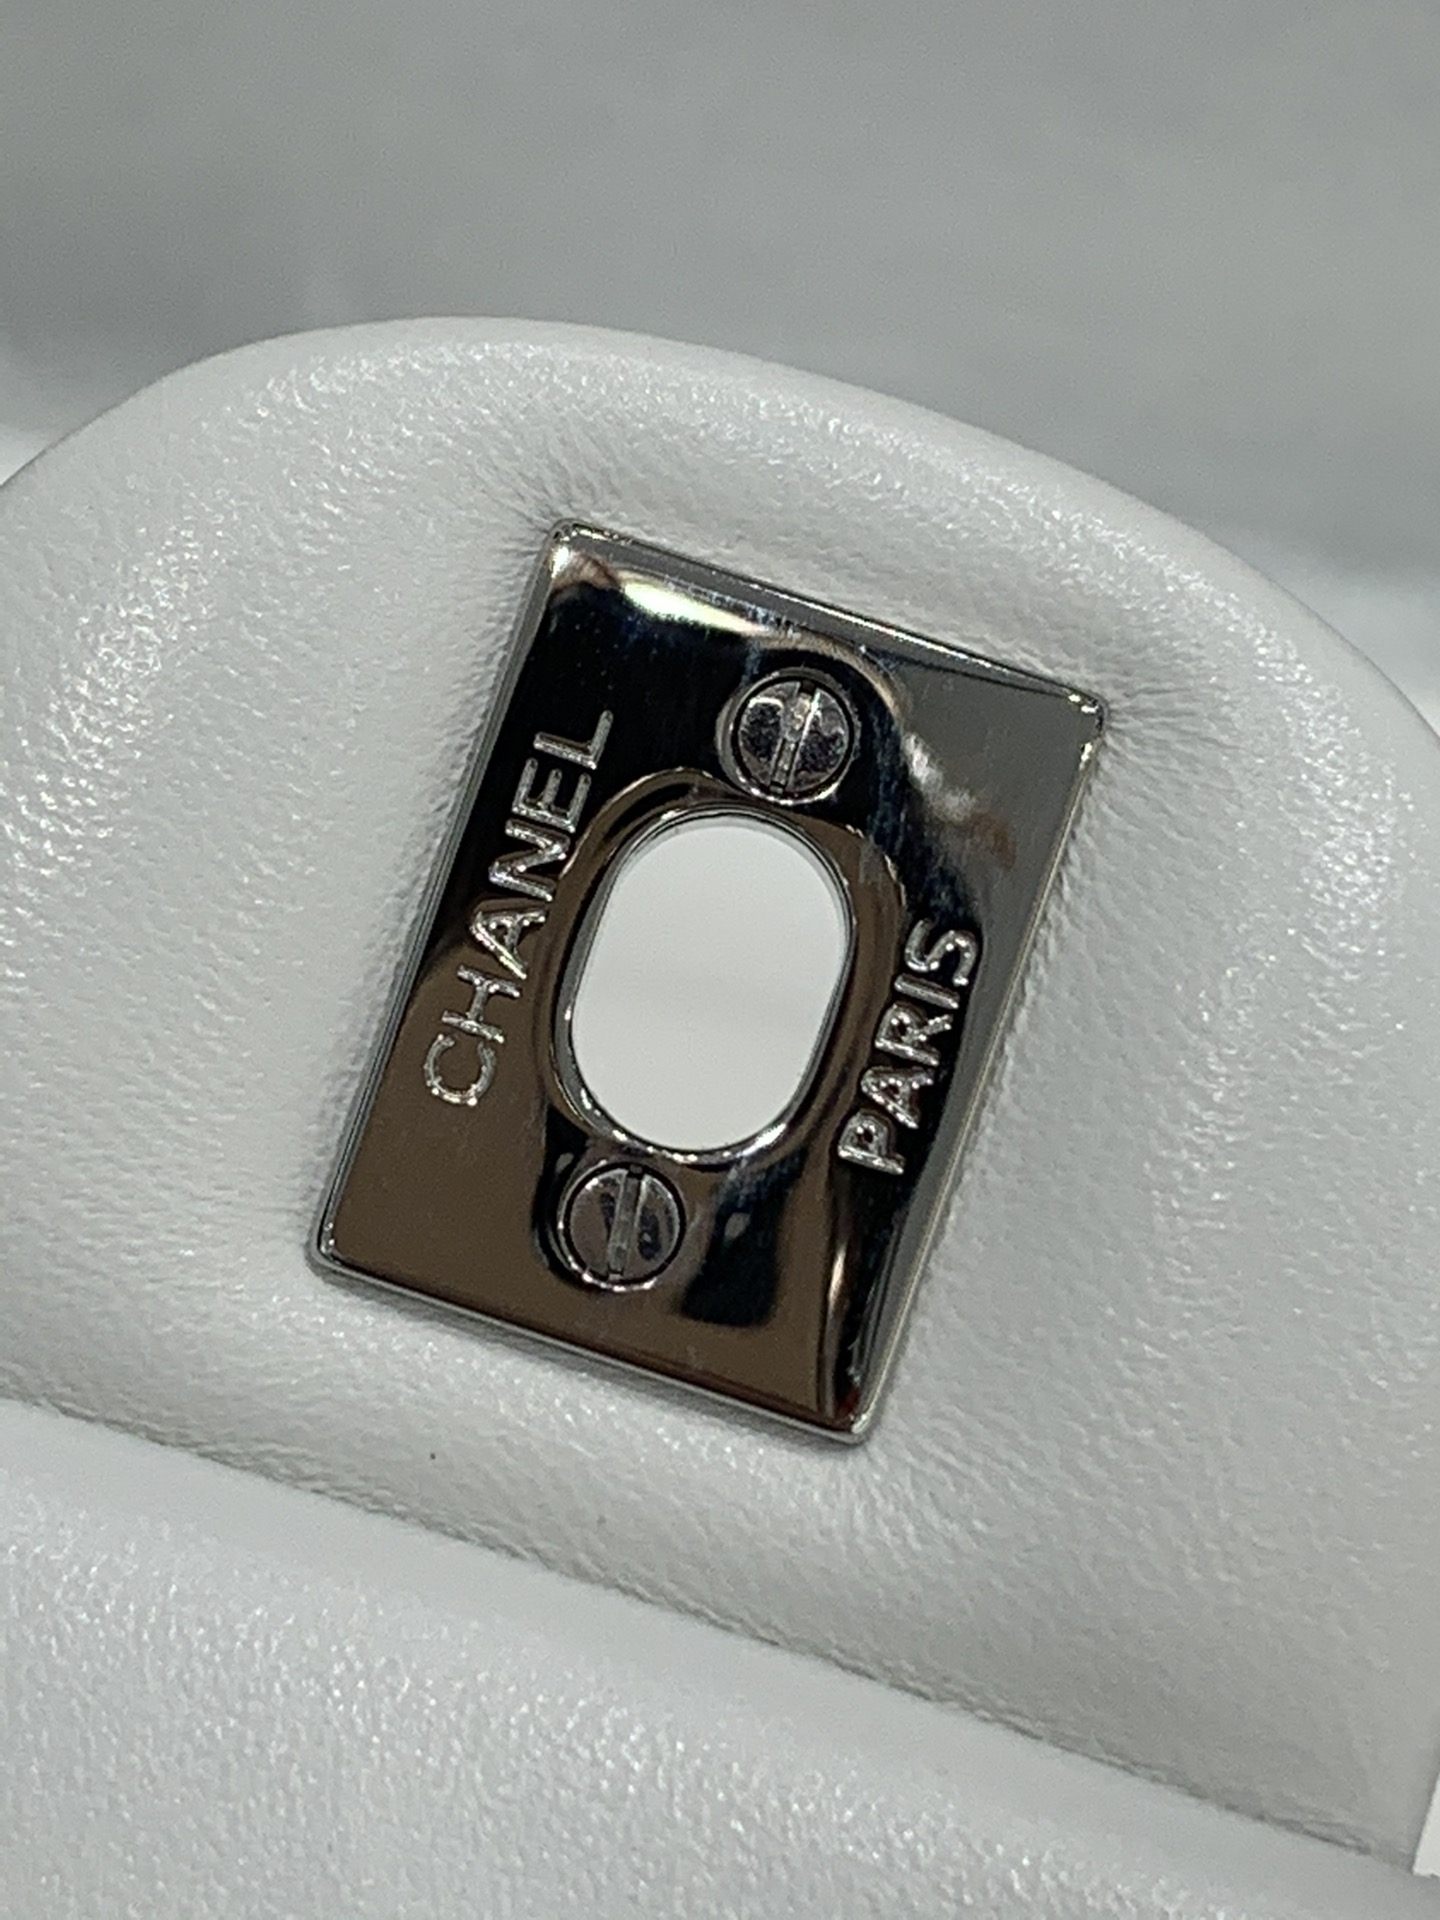 【真品级】Chanel CF 25  原厂bodin joyeux 羔羊皮  经典永远百搭 2022流行色 白色 银扣